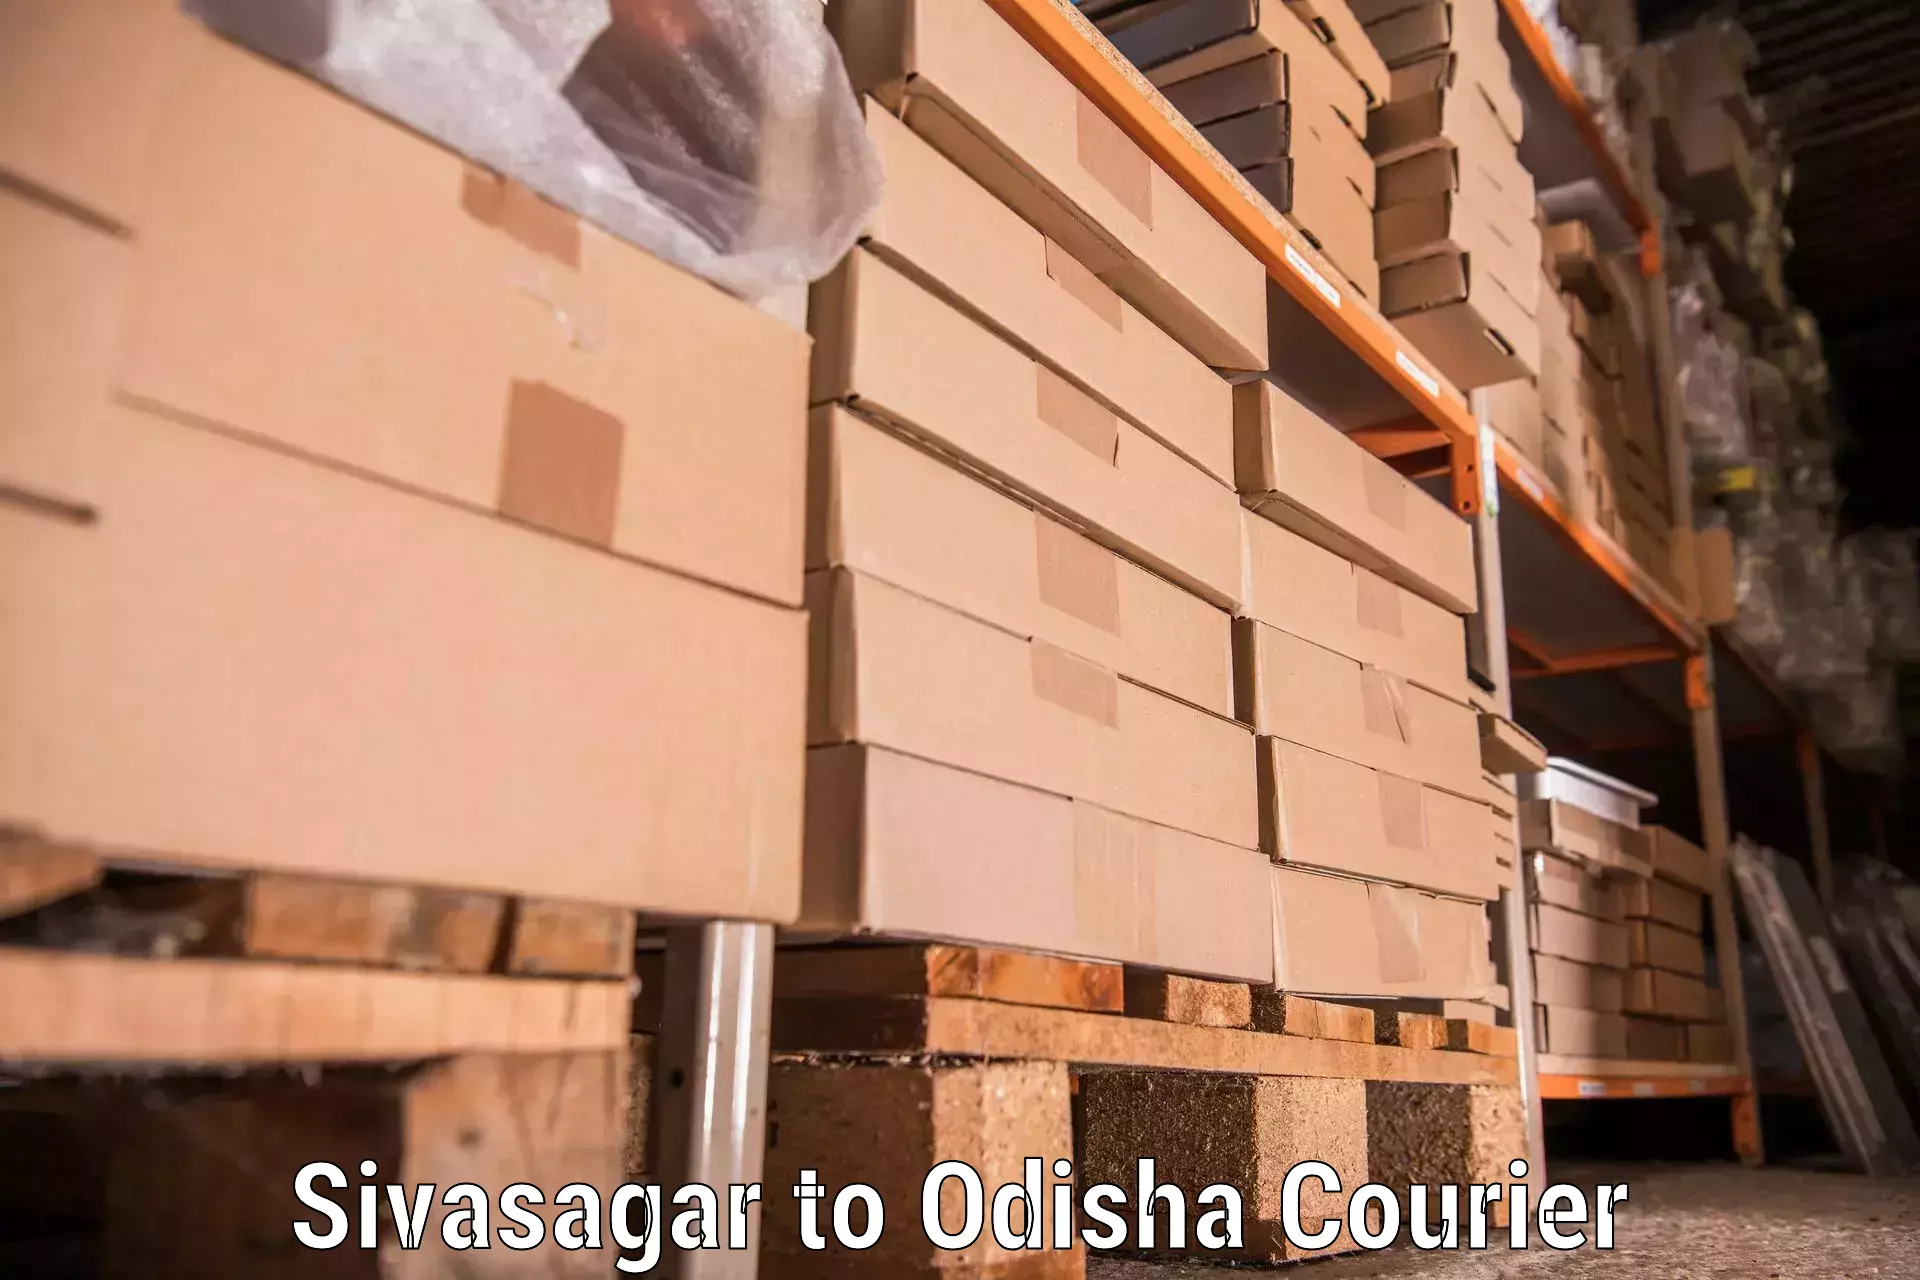 High-quality moving services Sivasagar to Morada